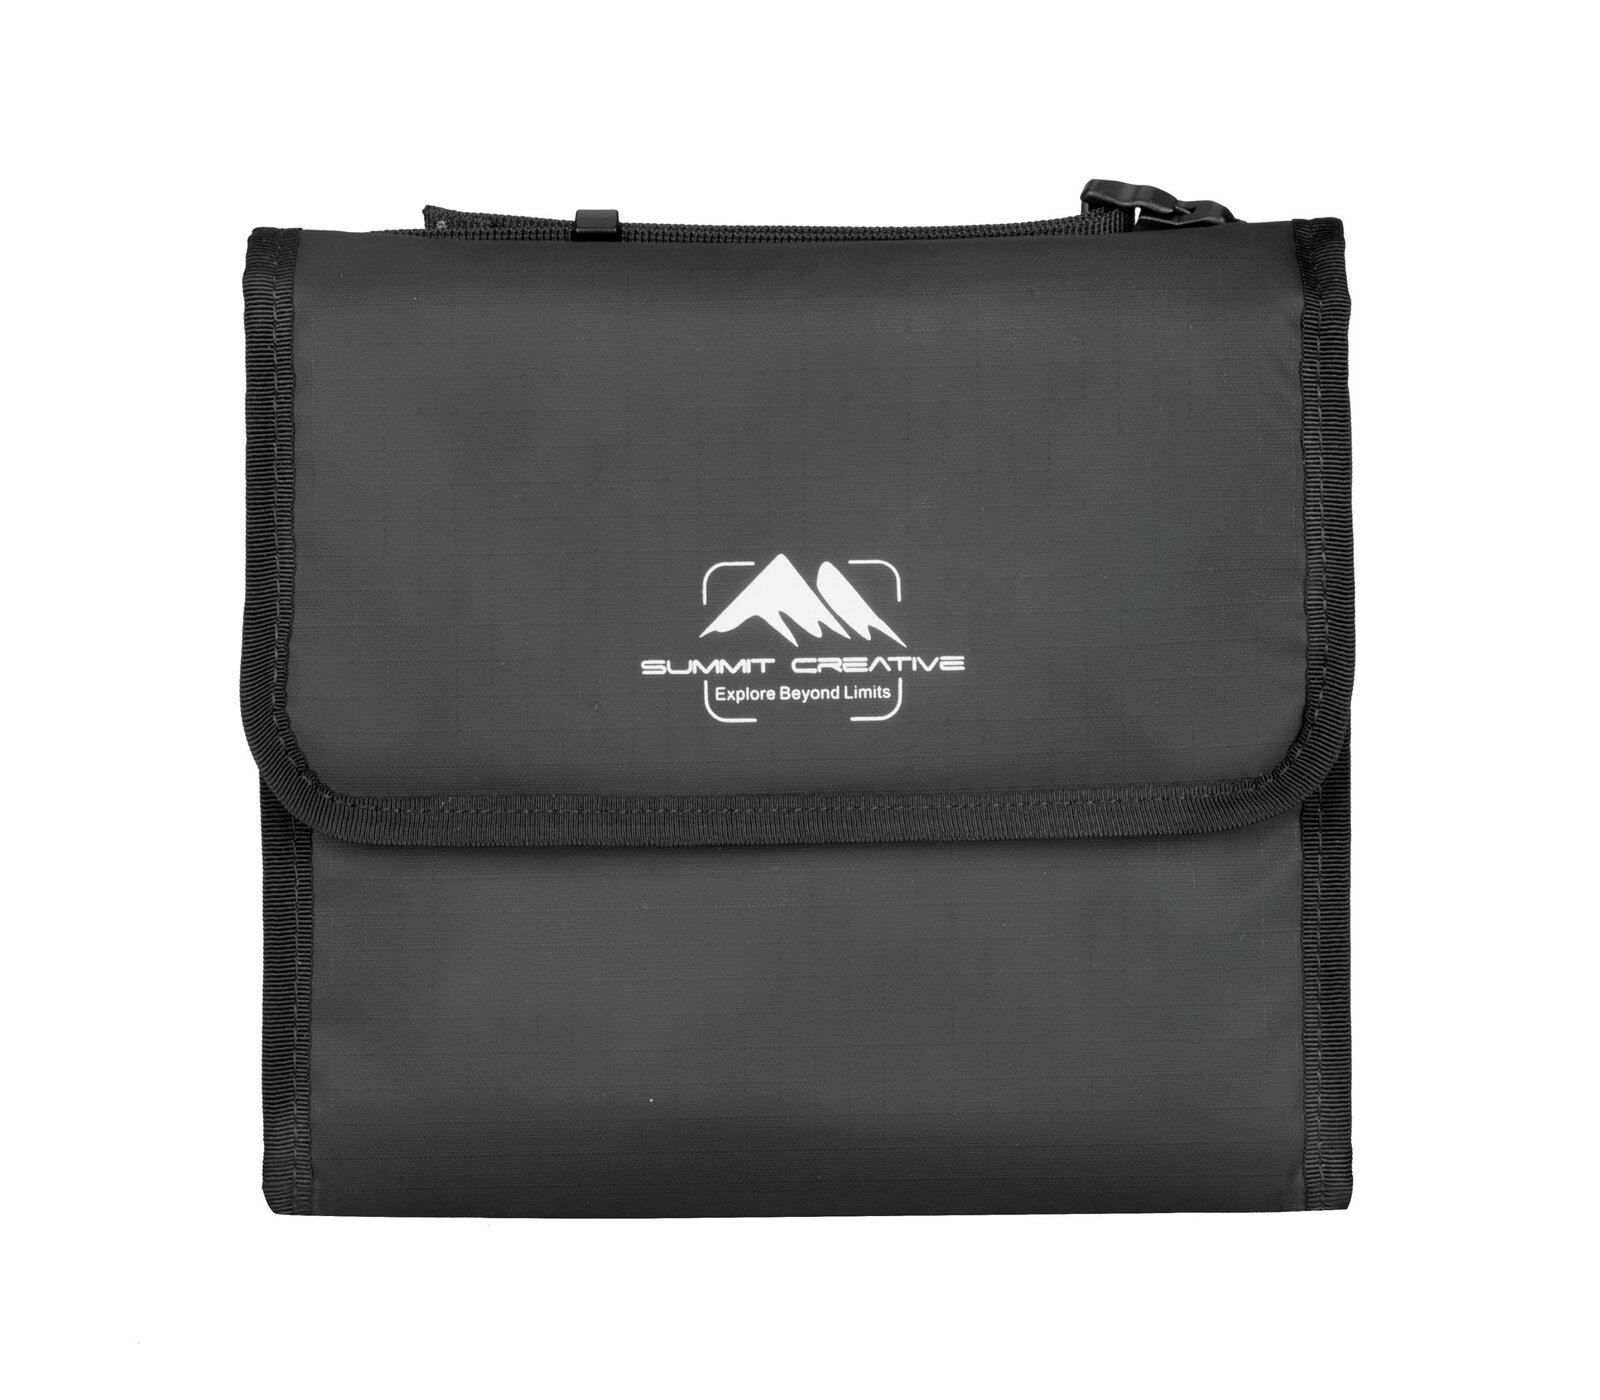 Чехол Summit Creative Filter Bag 150-5, для 5 светофильтров до 150 мм, черный